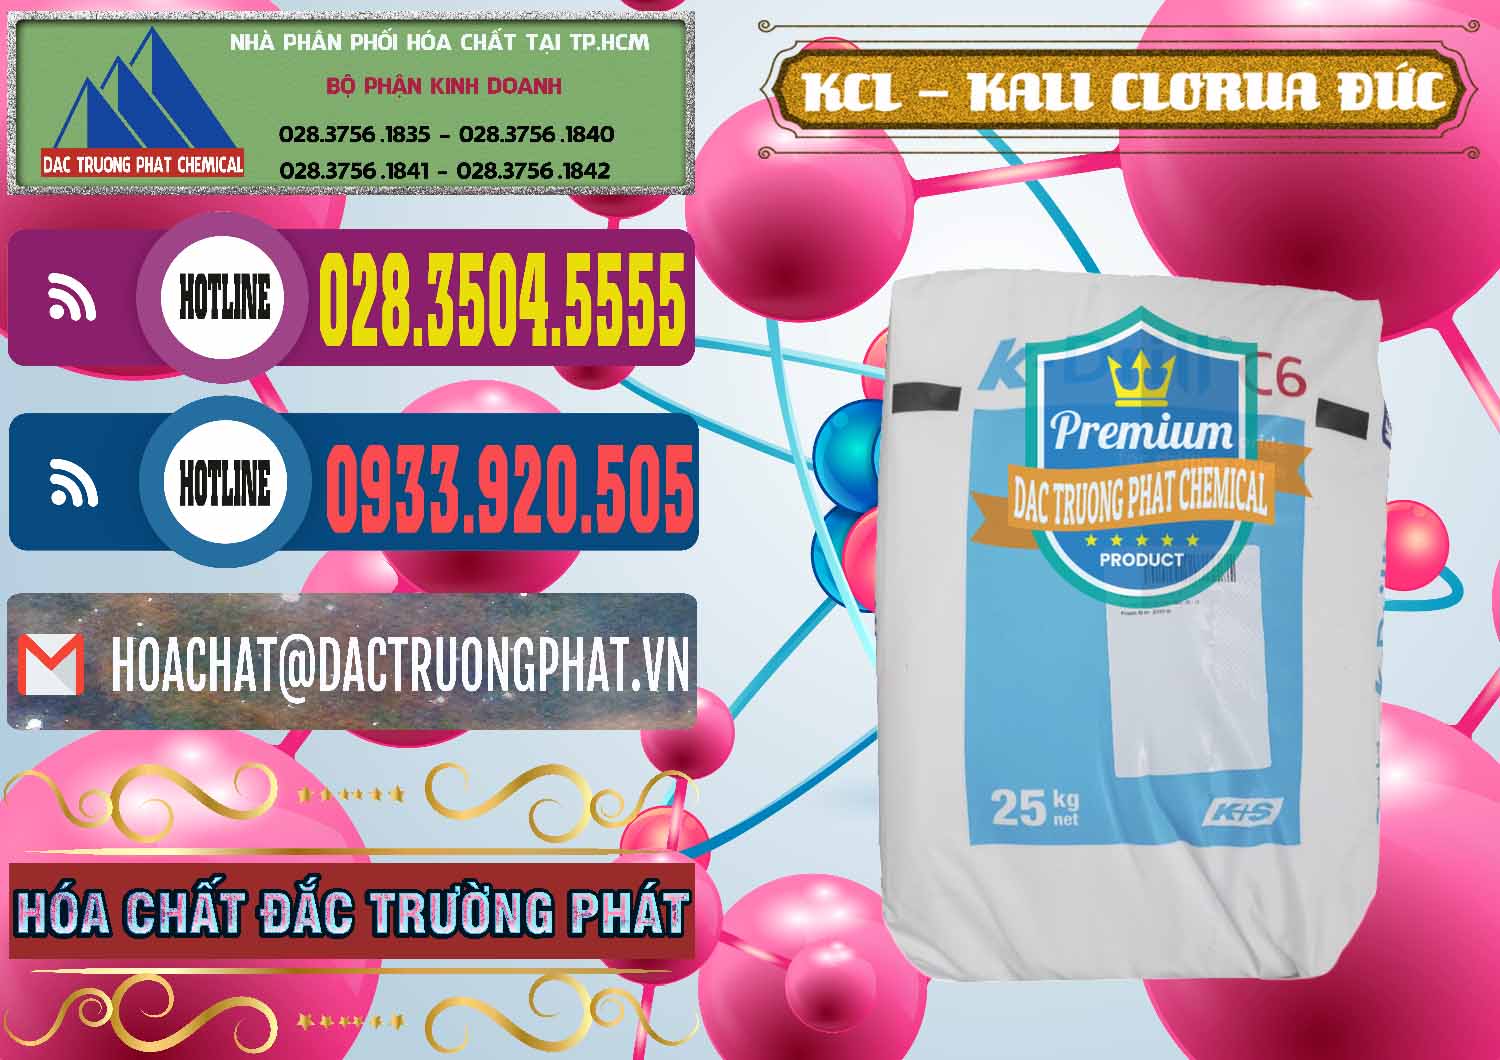 Nơi chuyên bán _ cung cấp KCL – Kali Clorua Trắng K DRILL Đức Germany - 0428 - Cung cấp - nhập khẩu hóa chất tại TP.HCM - muabanhoachat.com.vn